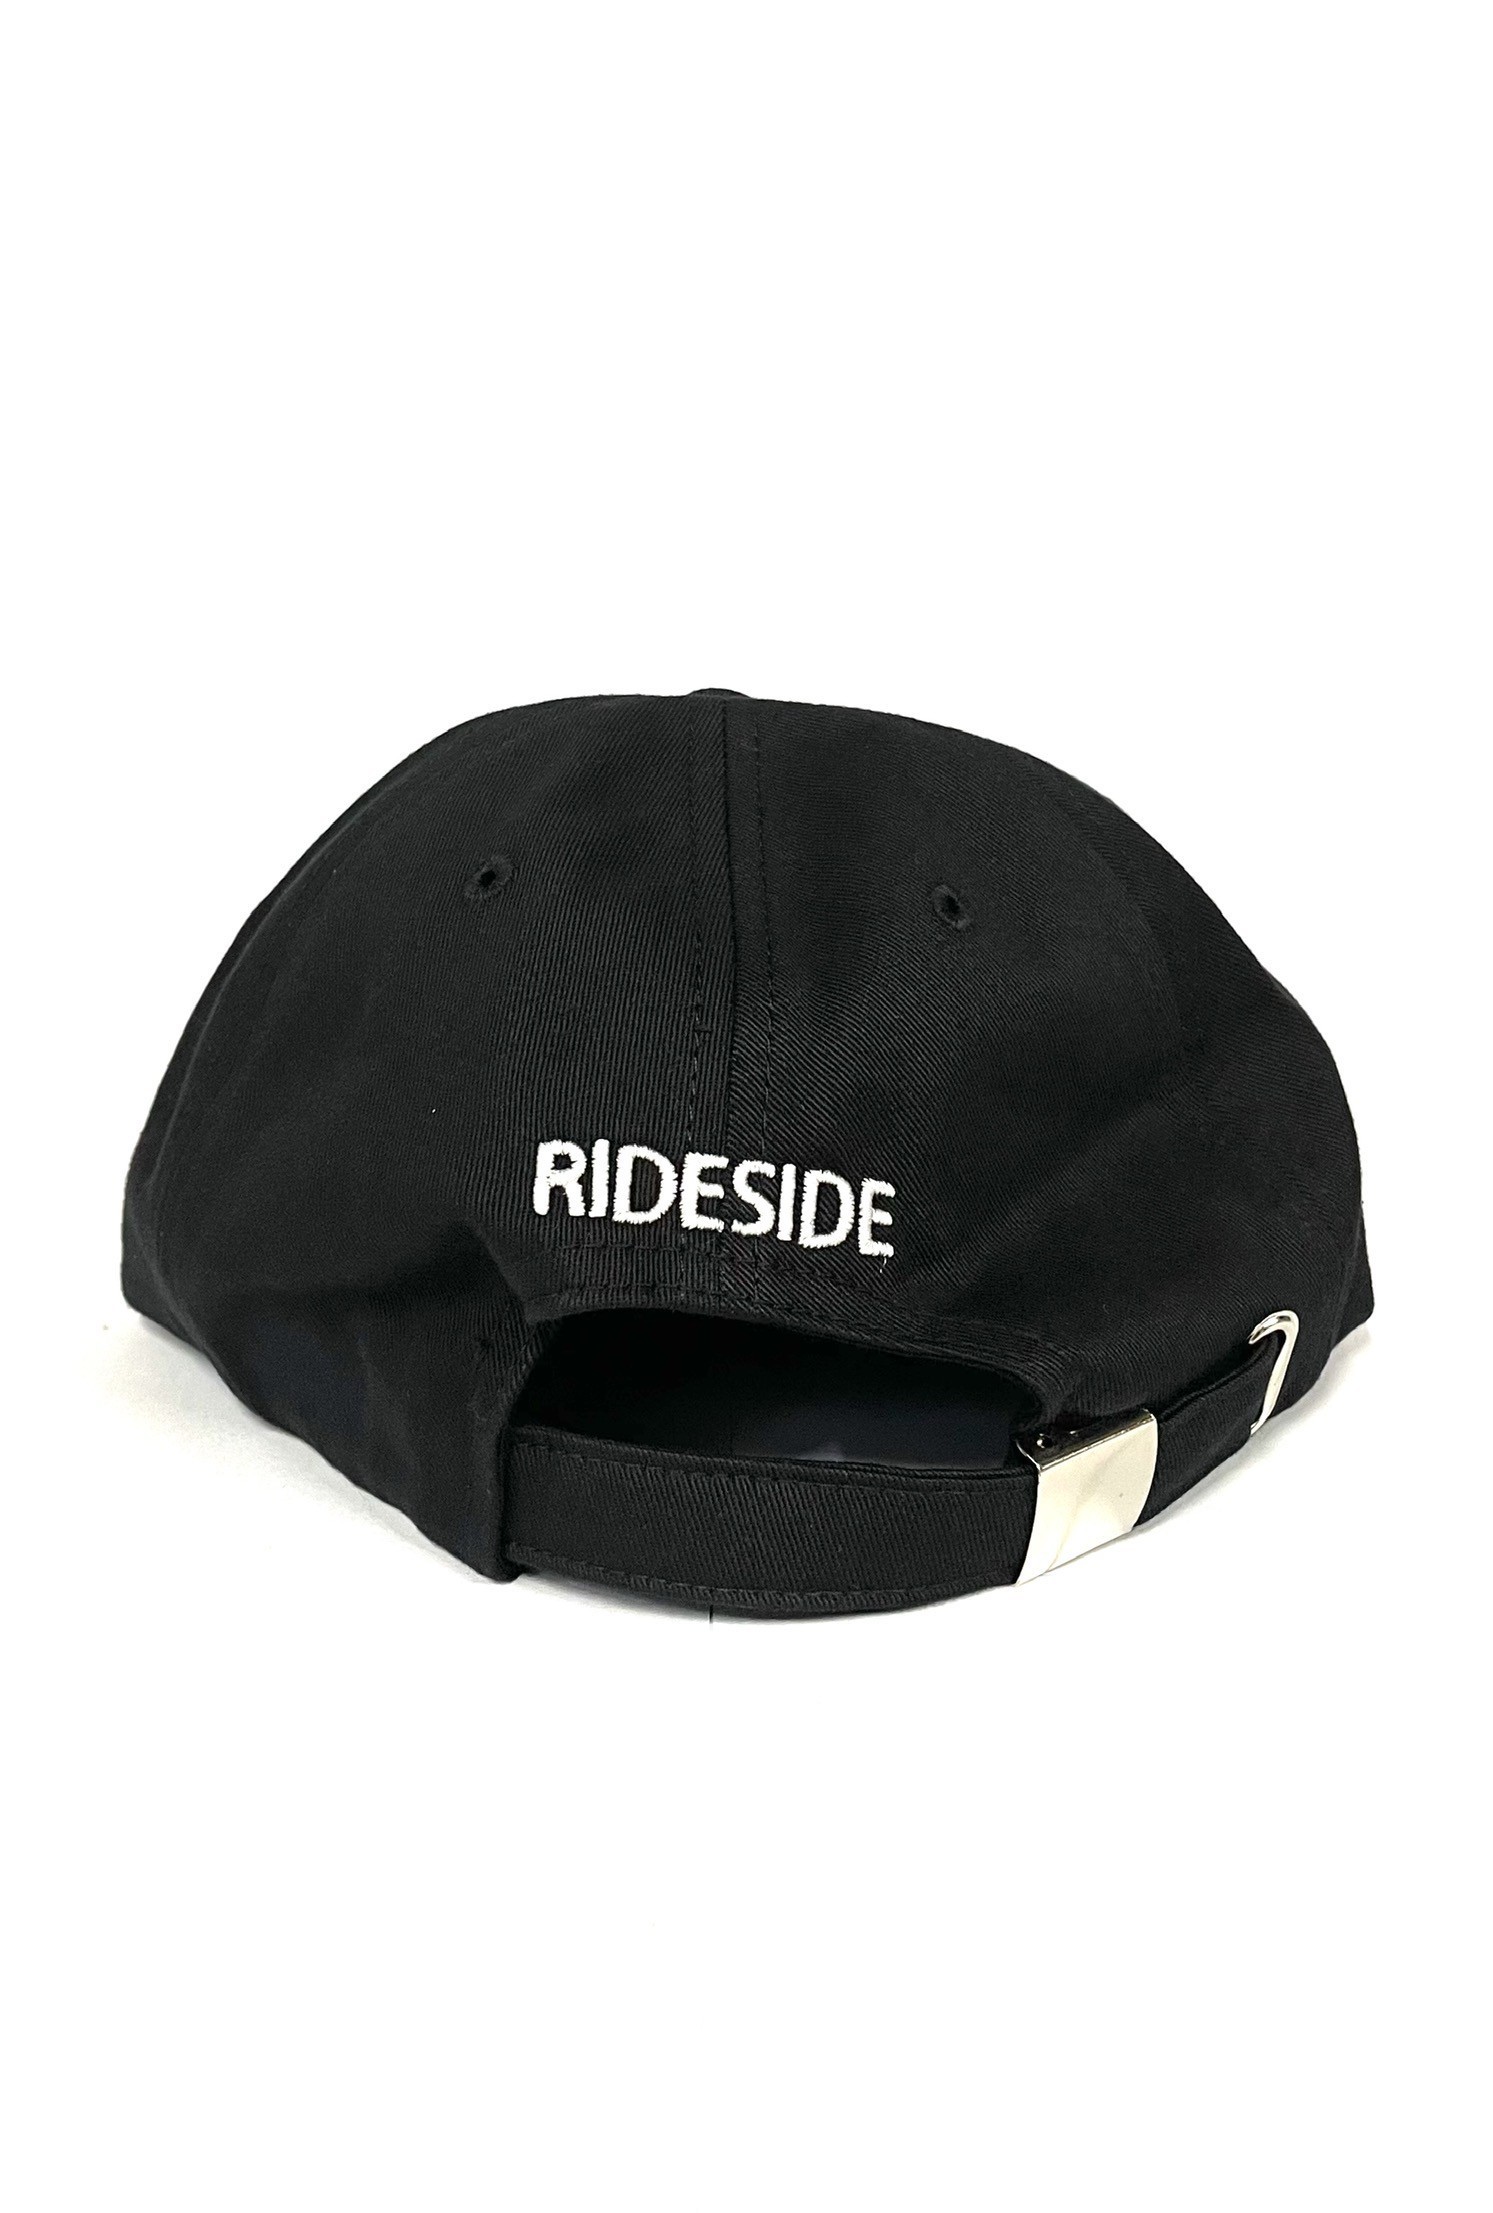 RideSide Polo Cap